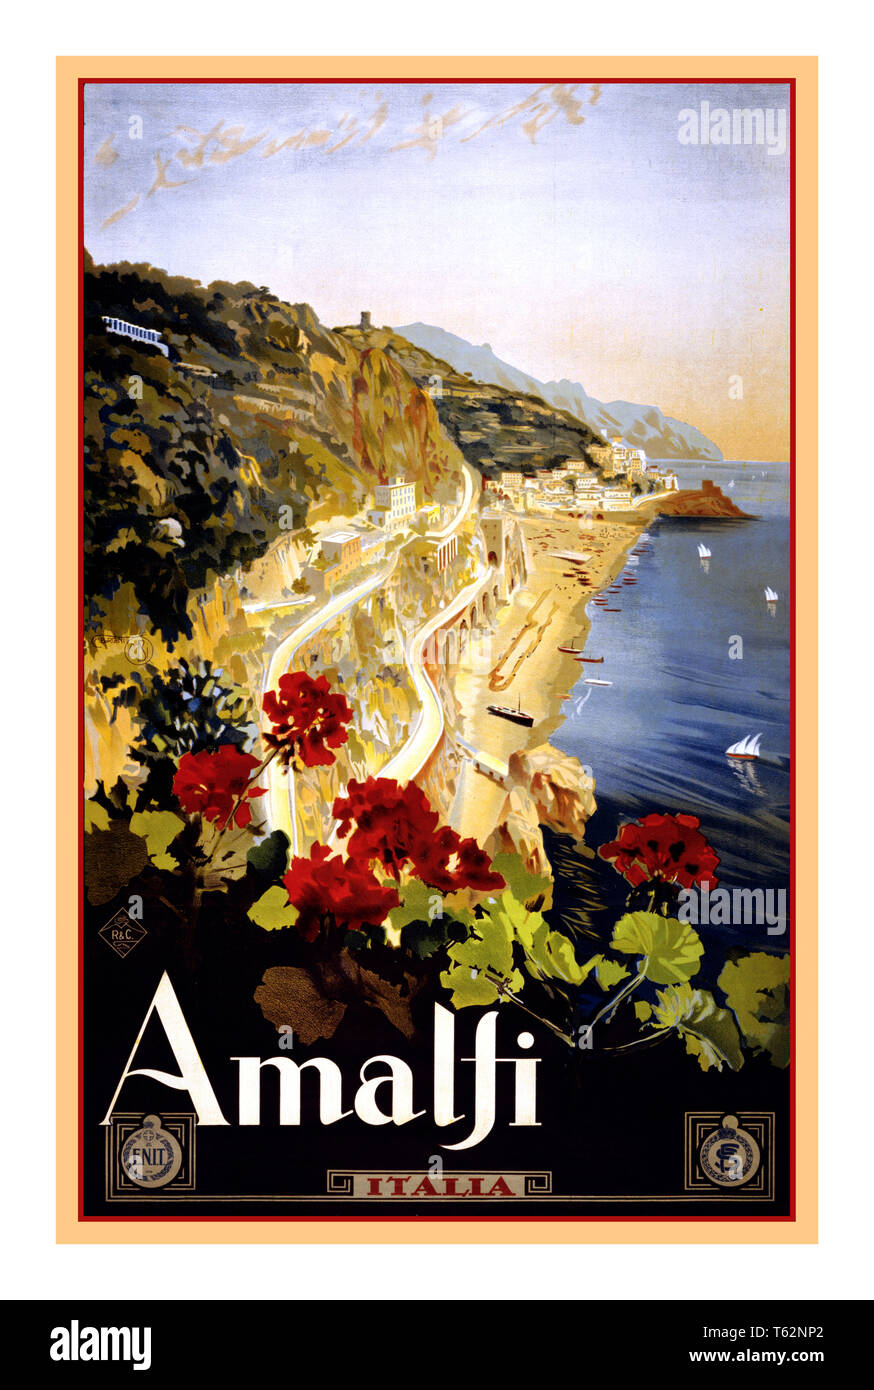 AMALFI Vintage Historic retro Travel Poster del 1900 Amalfi Italy Travel poster di Mario Borgoni, mostra la costiera amalfitana con gerani in primo piano. Data 1920 Amalfi Campania Italia Foto Stock